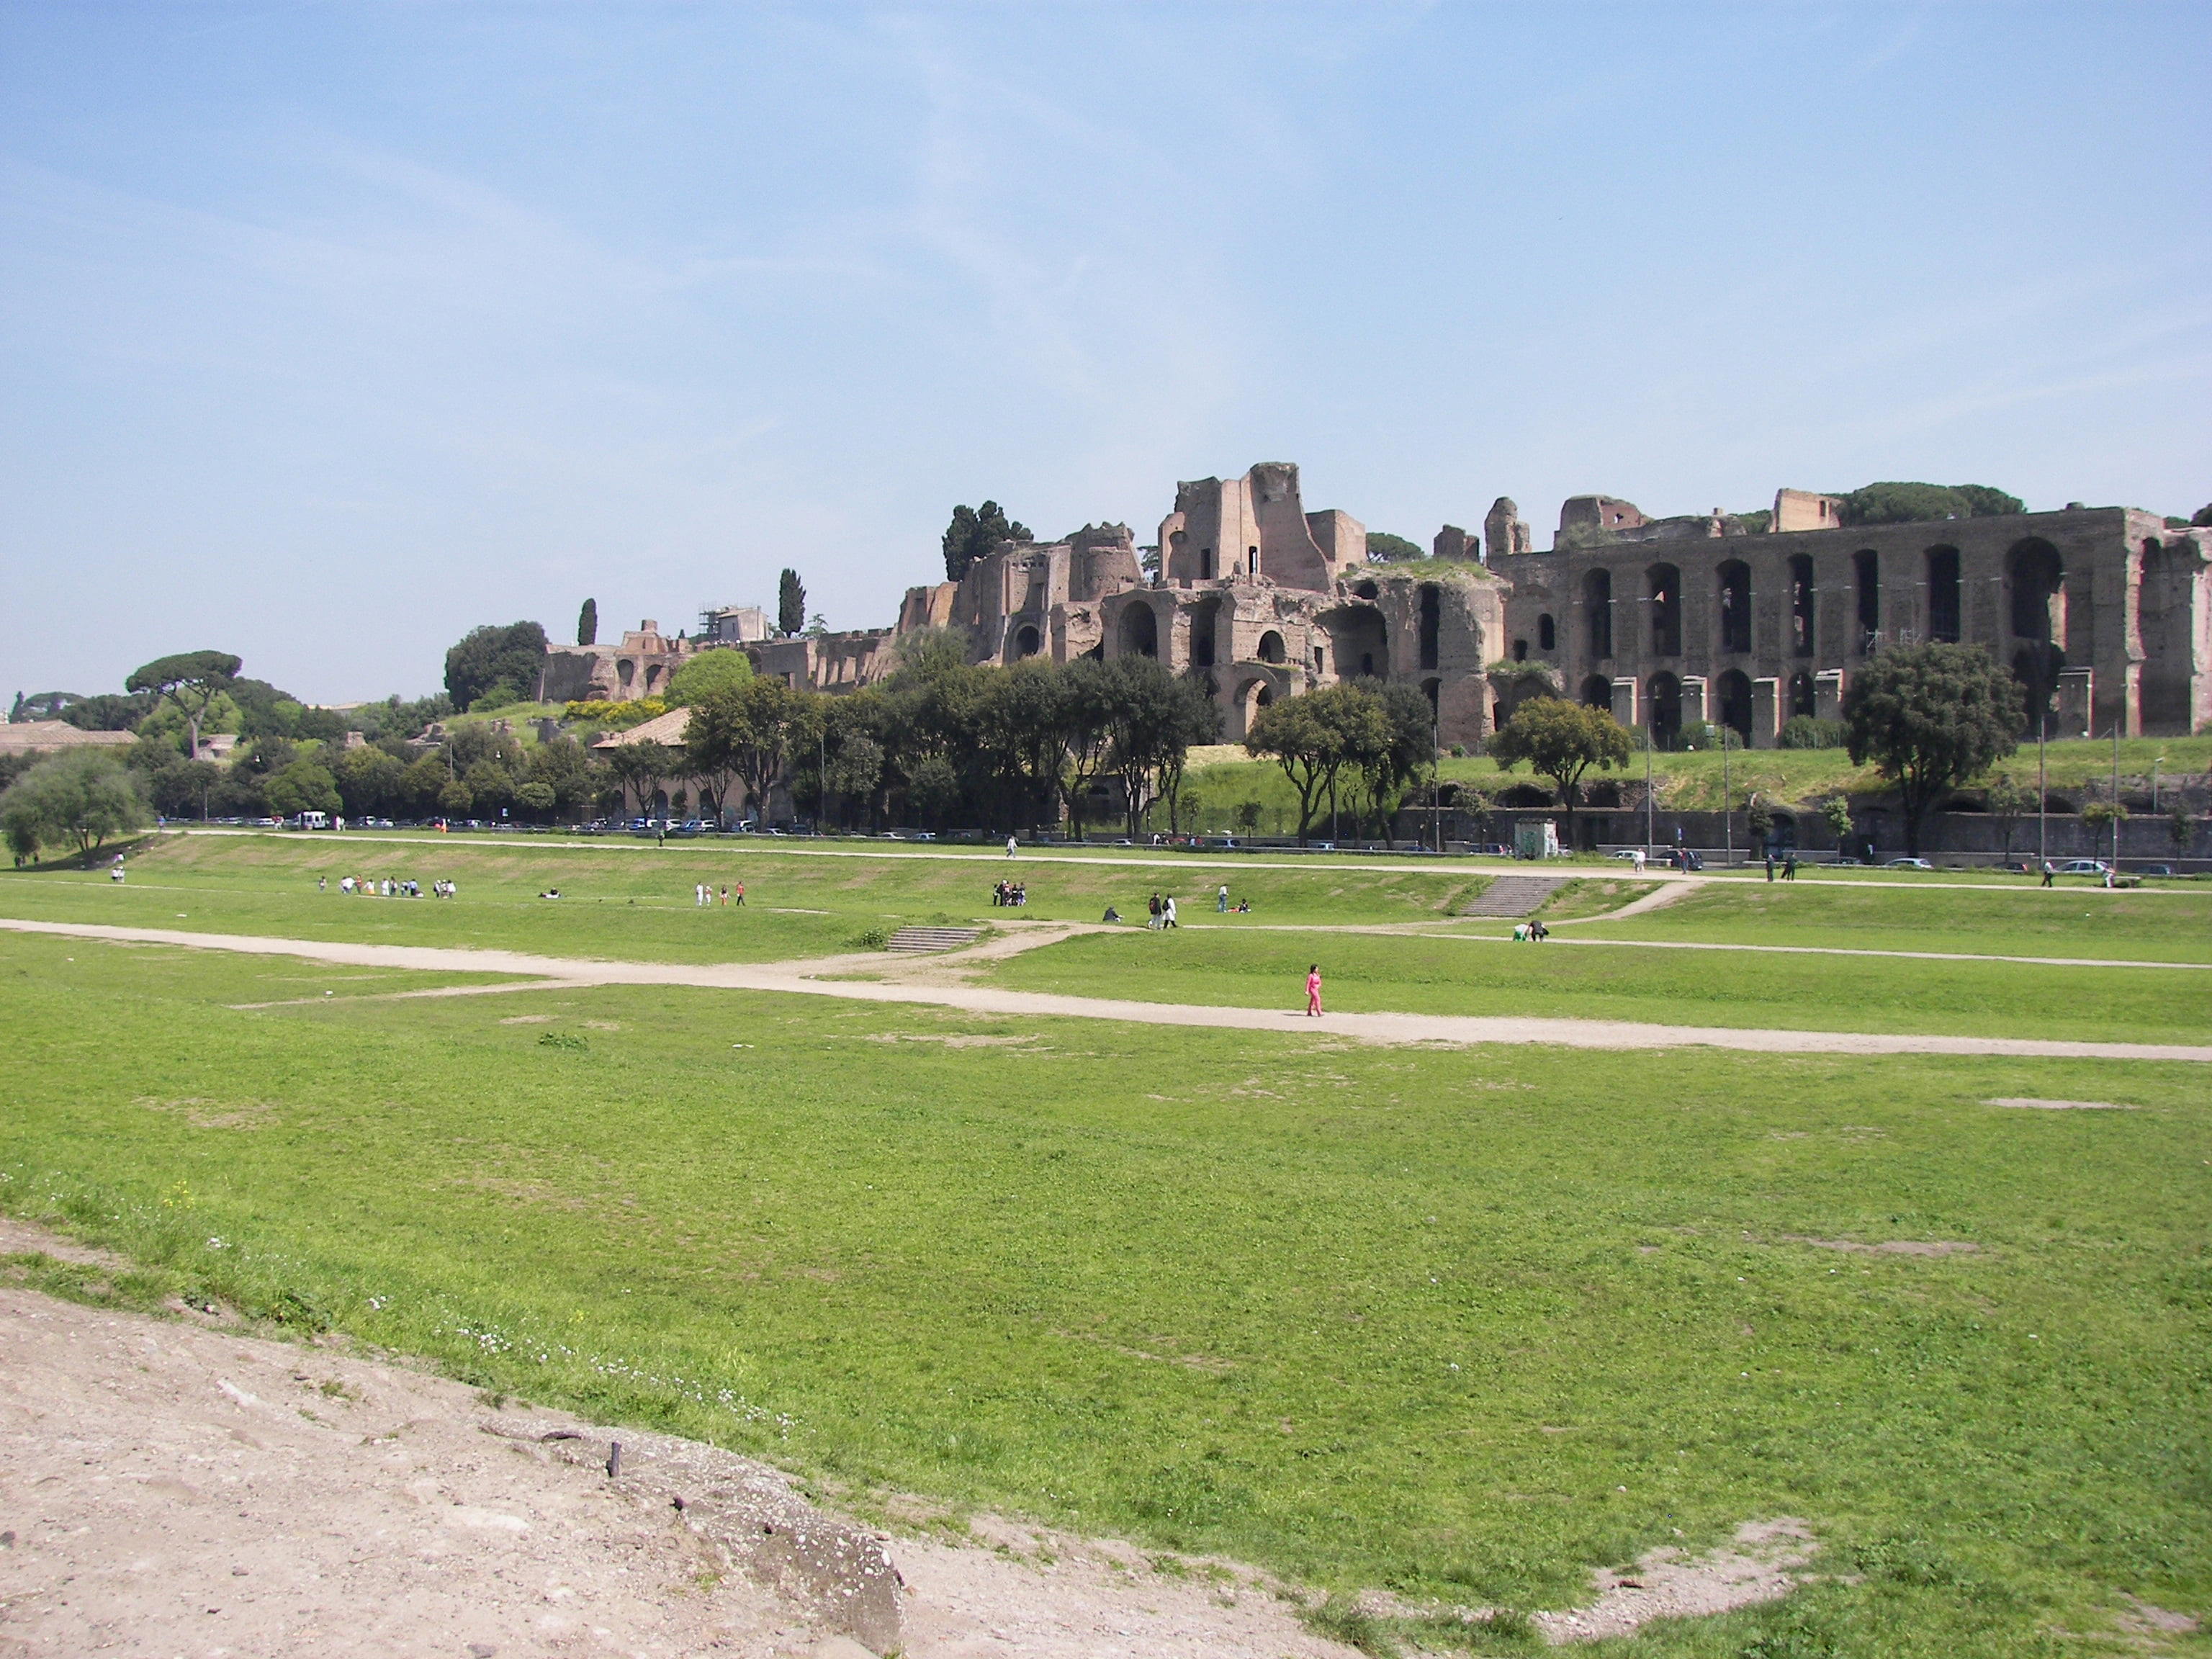 Circus Maximus